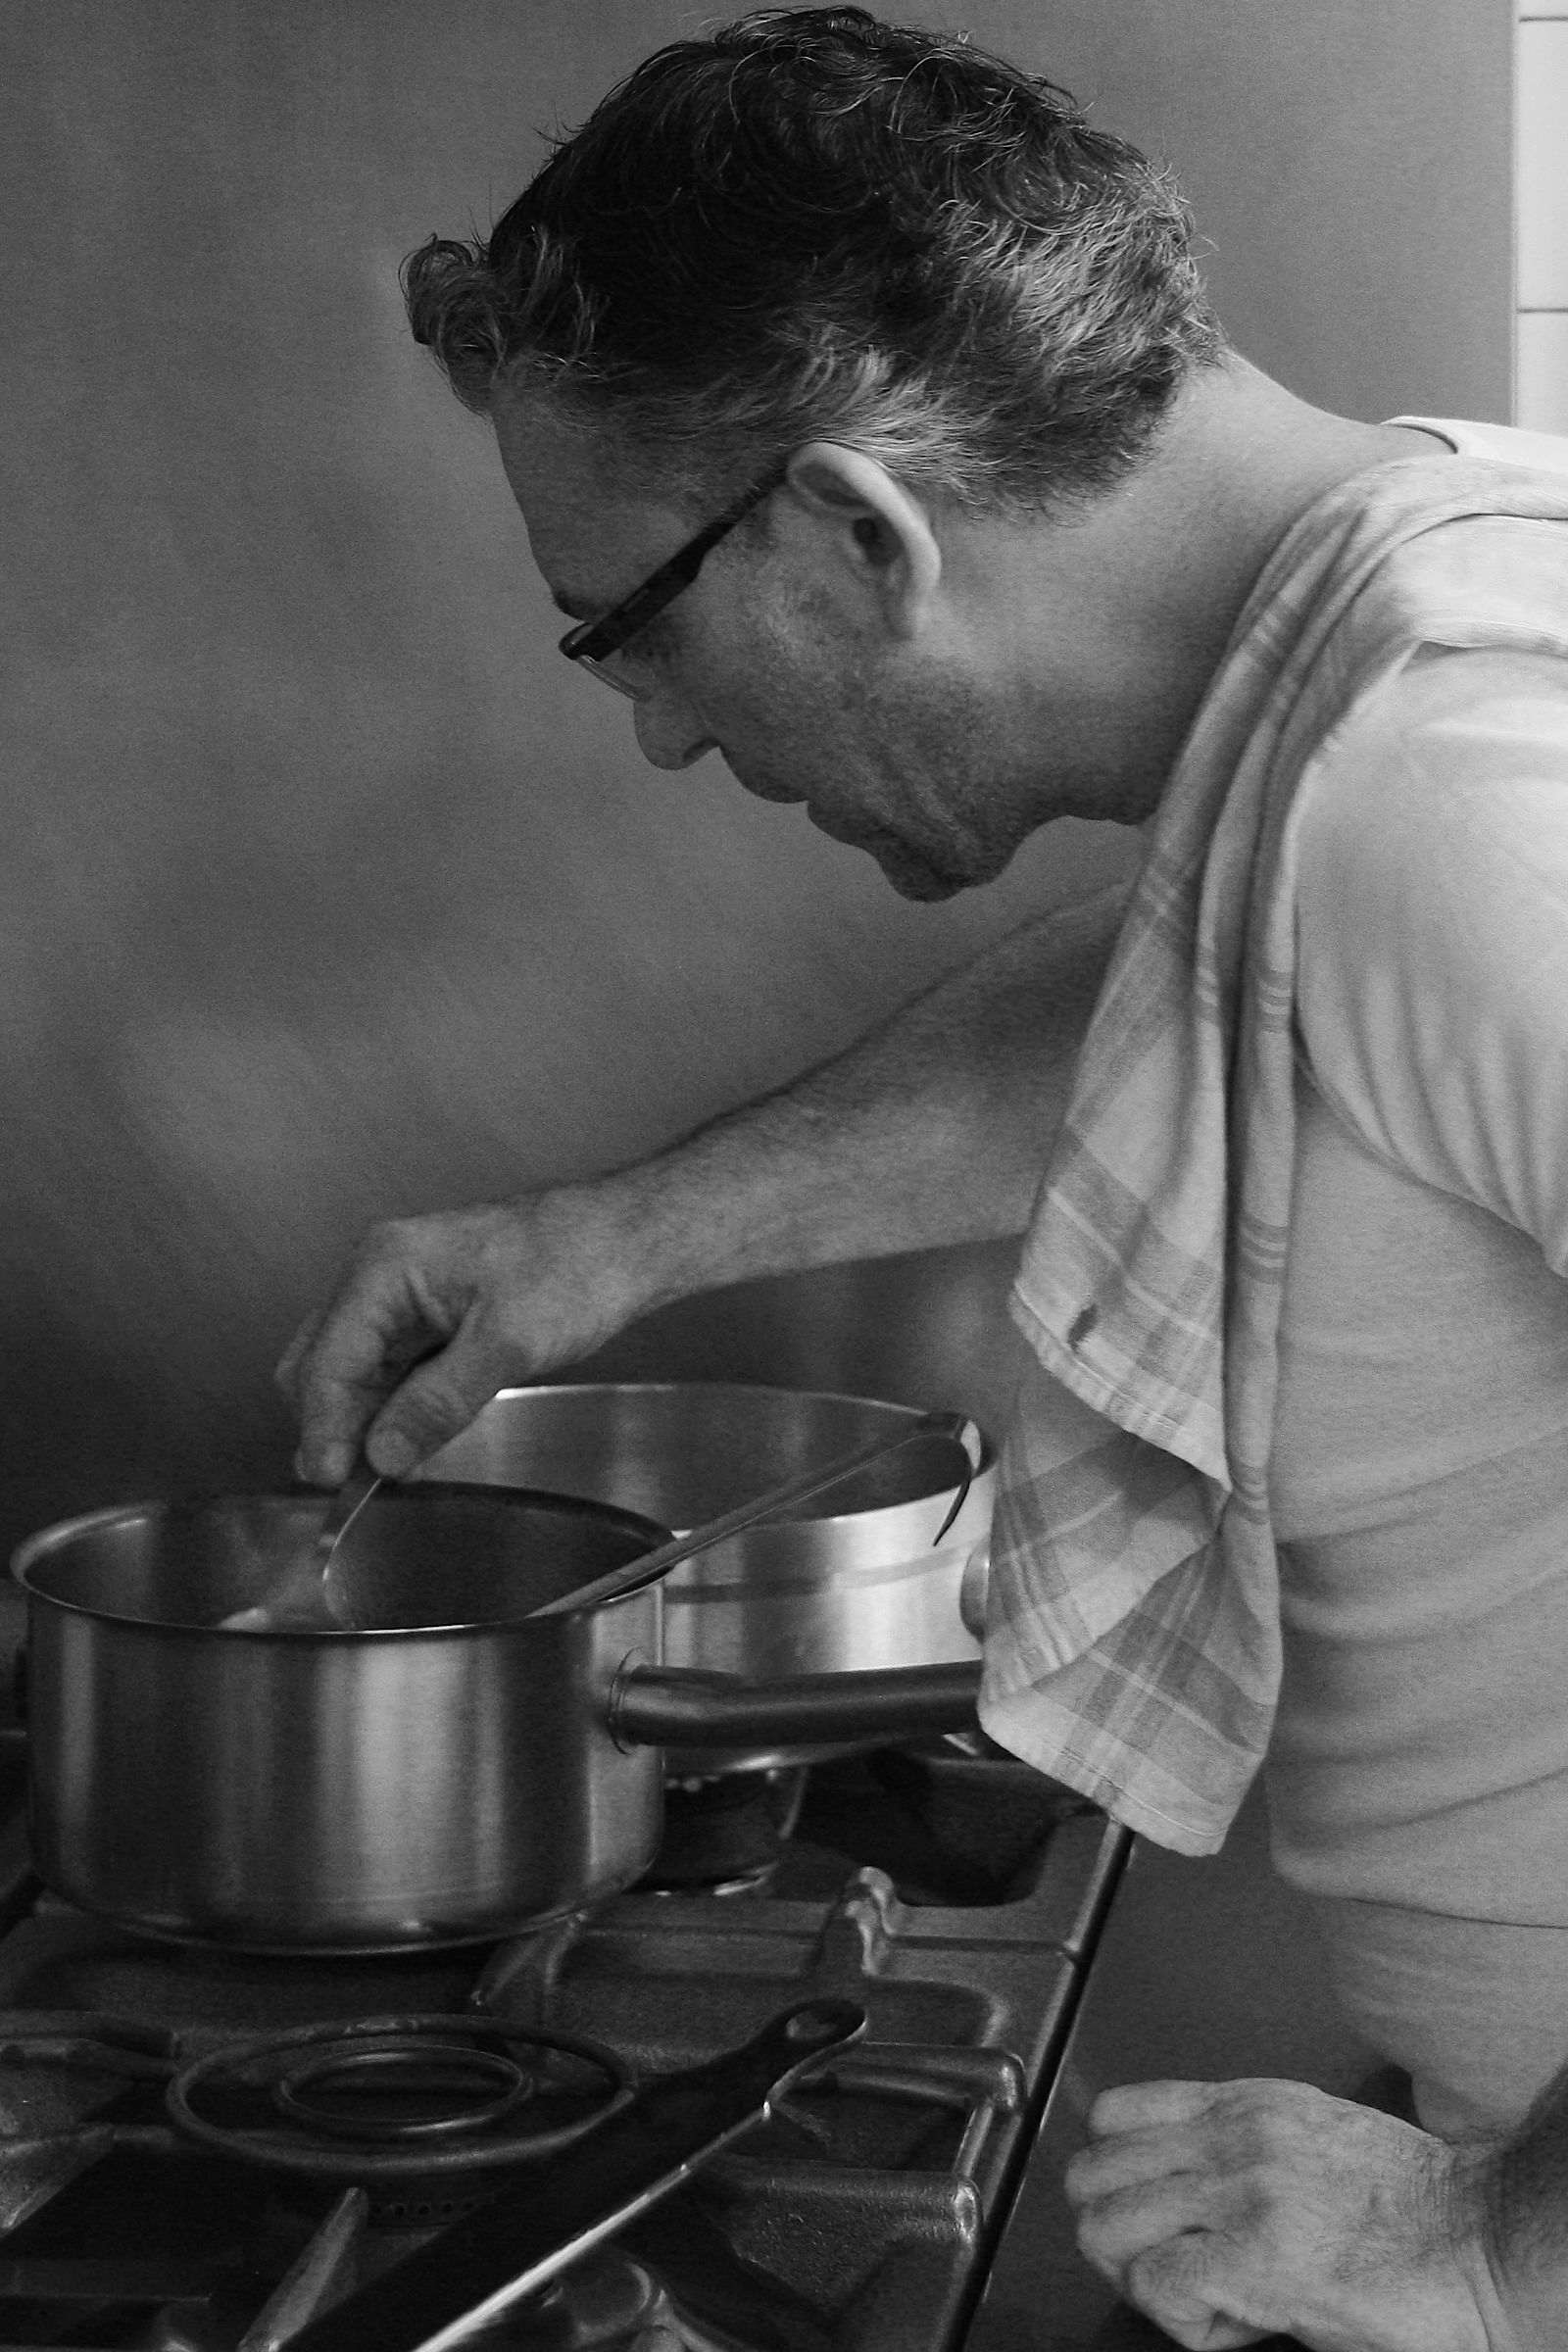 Pasquale Ricciardi à ses fourneaux, restaurant Le Cinecittà, Grenoble